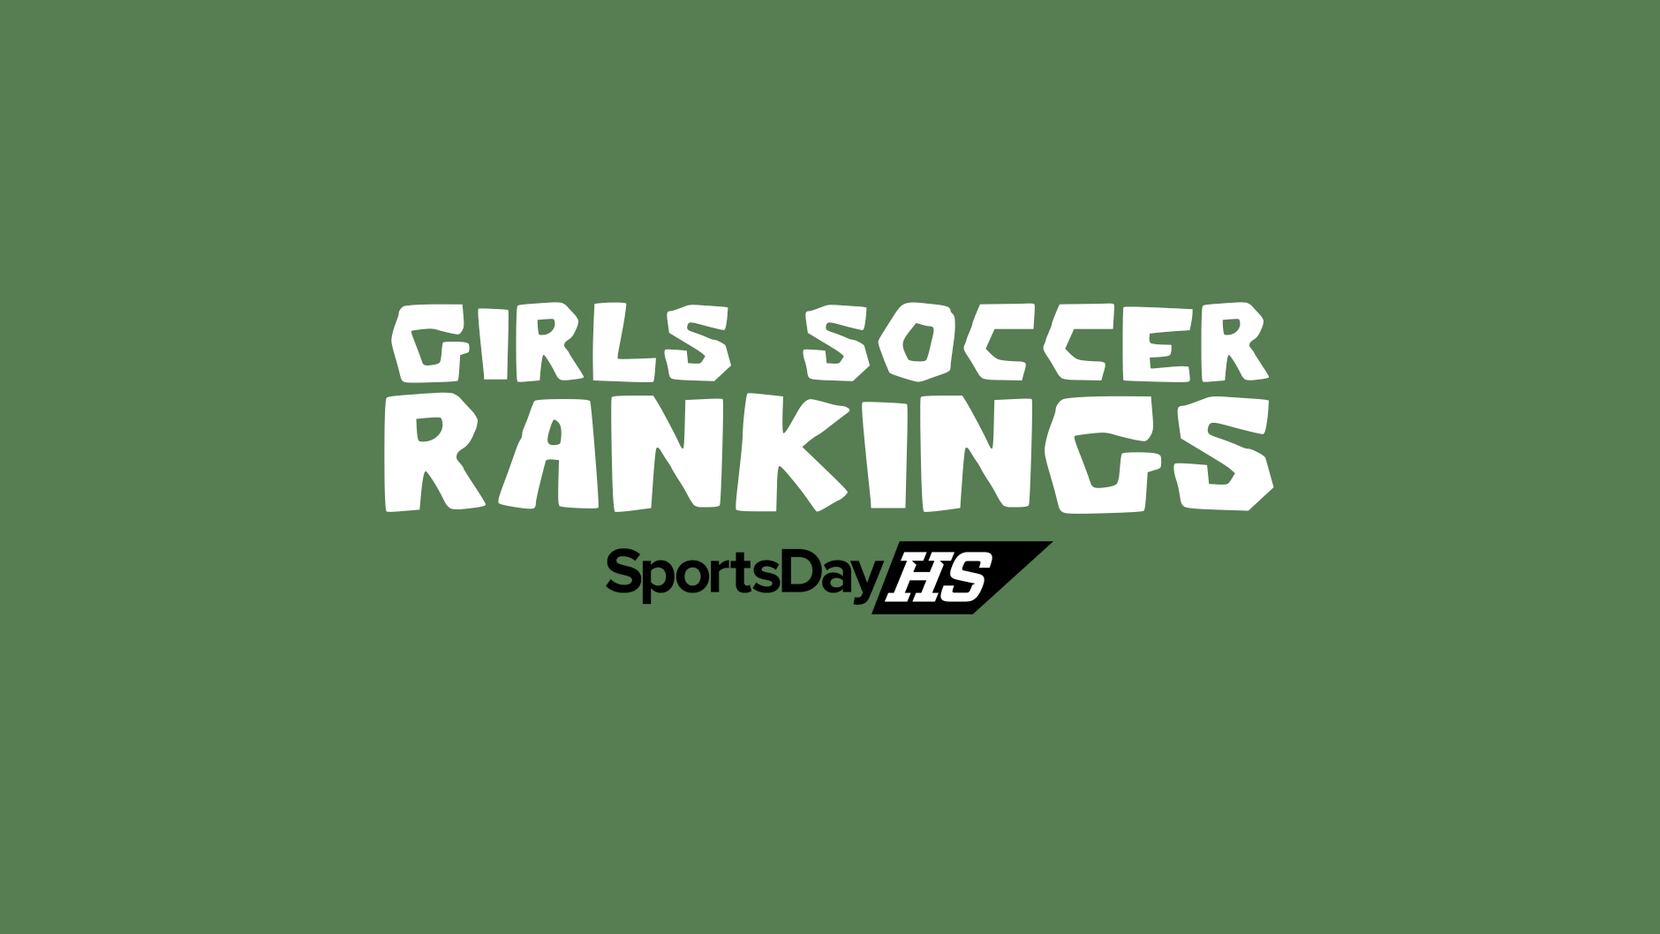 Girls soccer rankings.